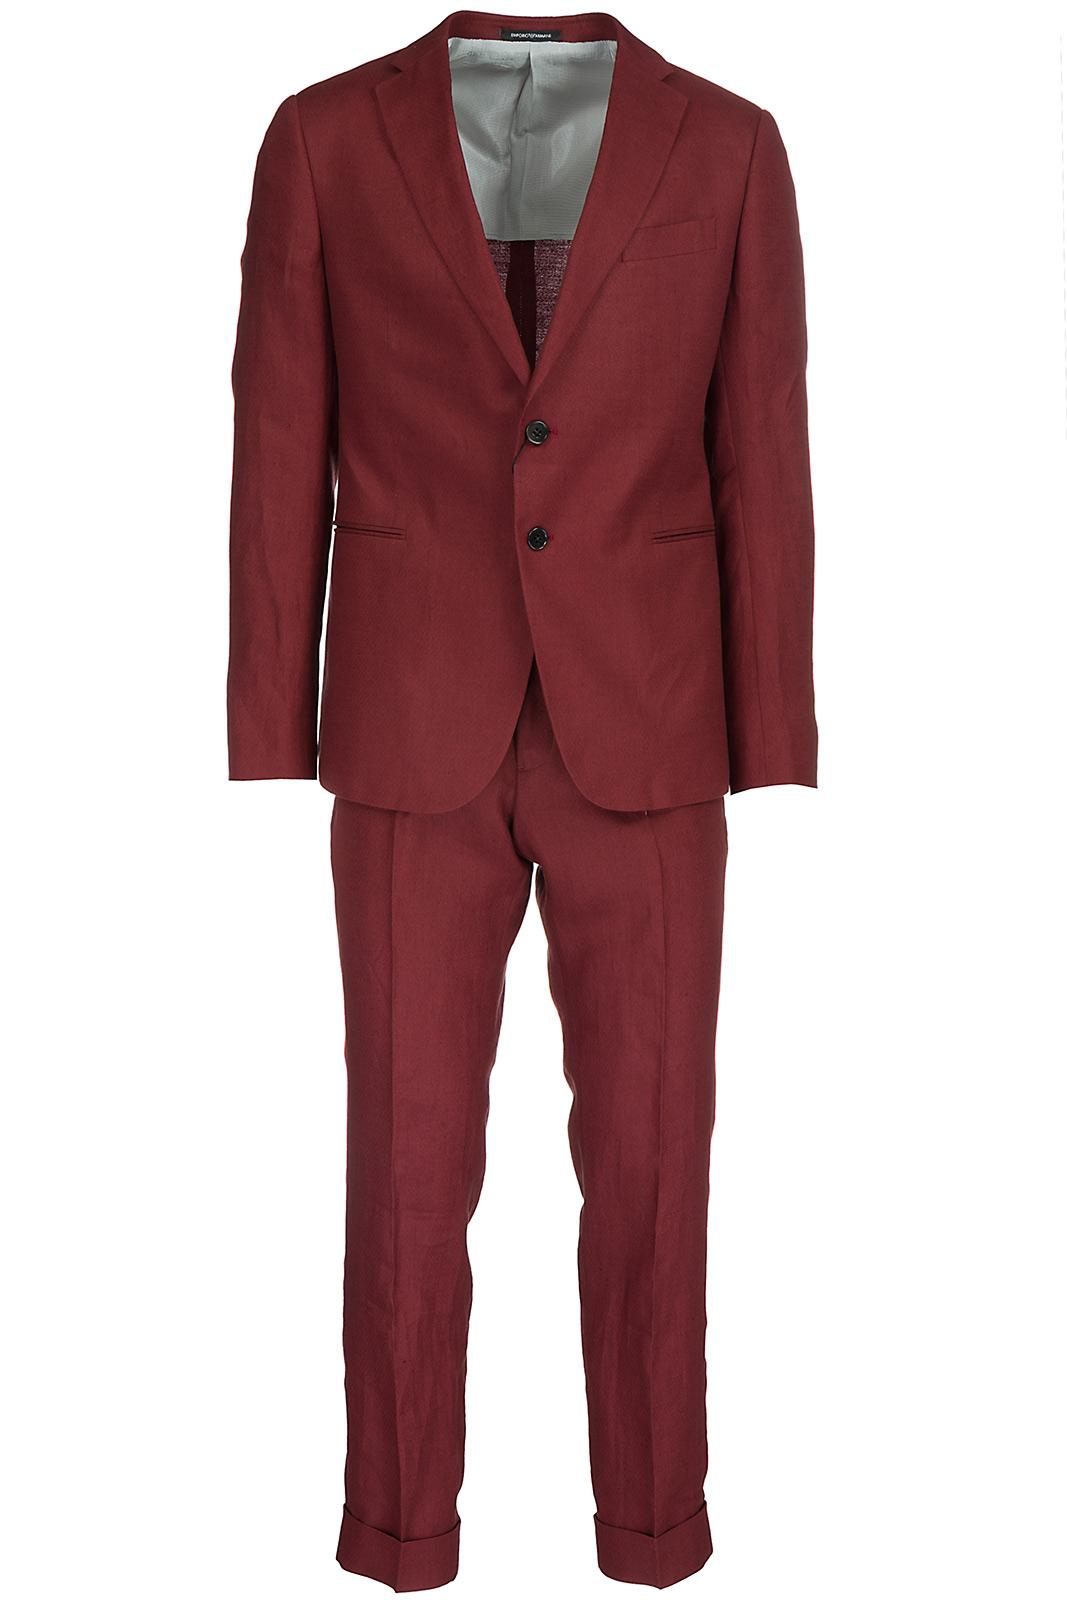 Emporio Armani Men's Suit In Red | ModeSens